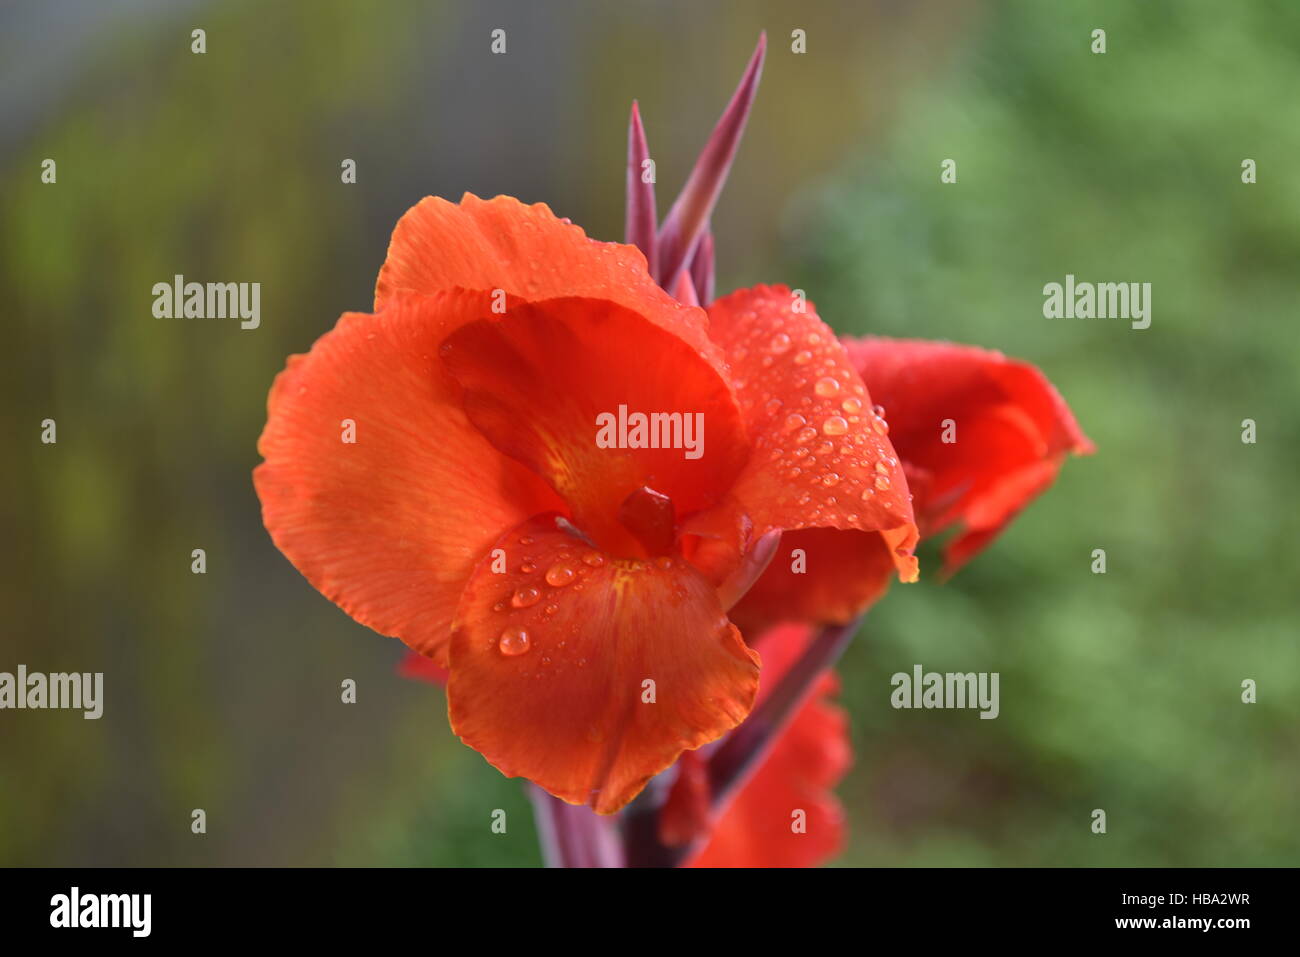 Canna lily, aunque no un verdadero lirio. Planta de flor indio grabaciones tomadas en los días lluviosos Foto de stock